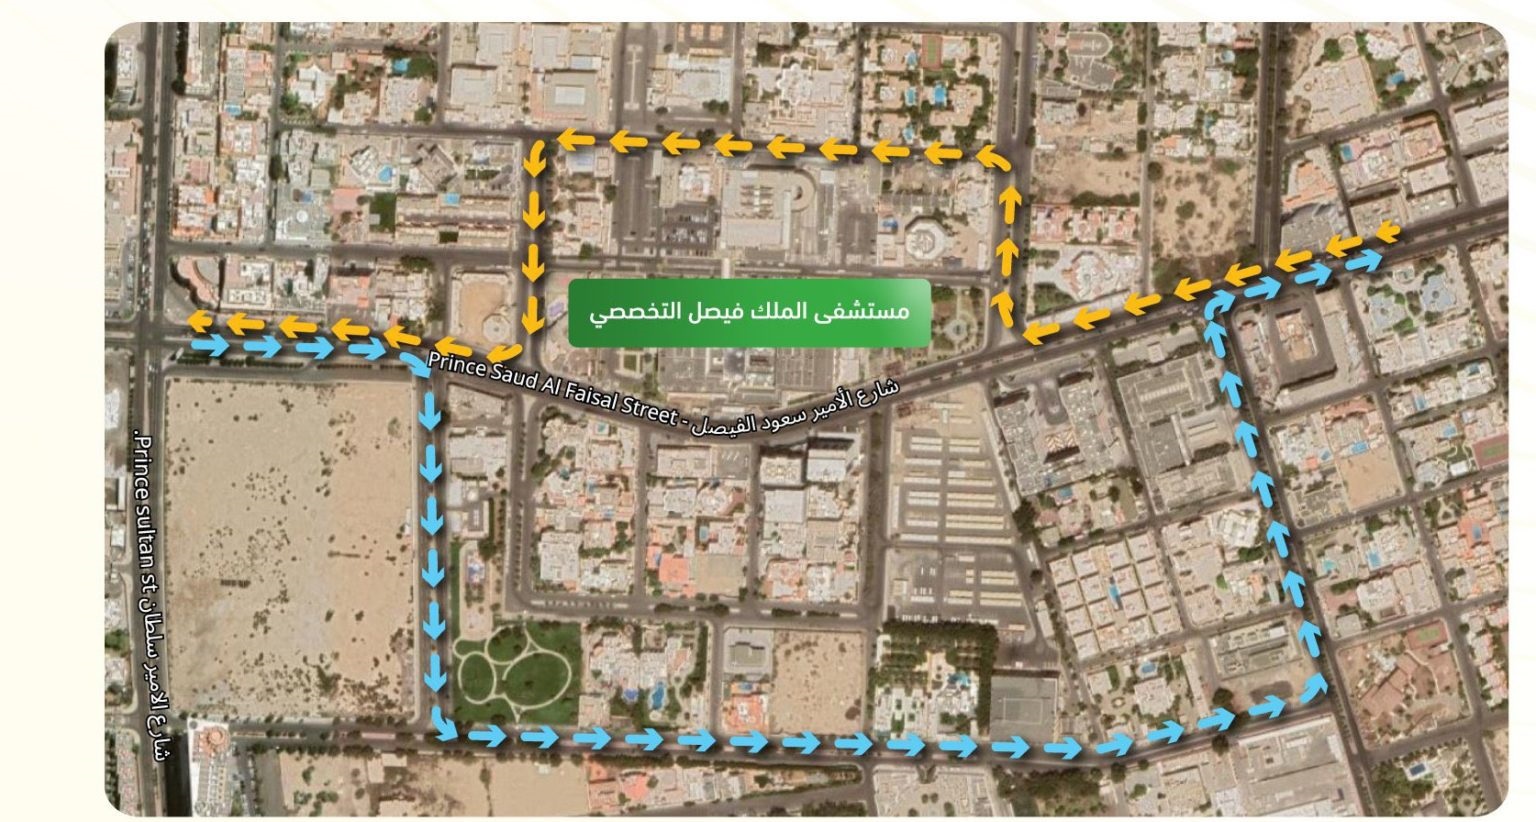 المرور : إغلاق طريق الأمير سعود الفيصل في جدة مؤقتًا